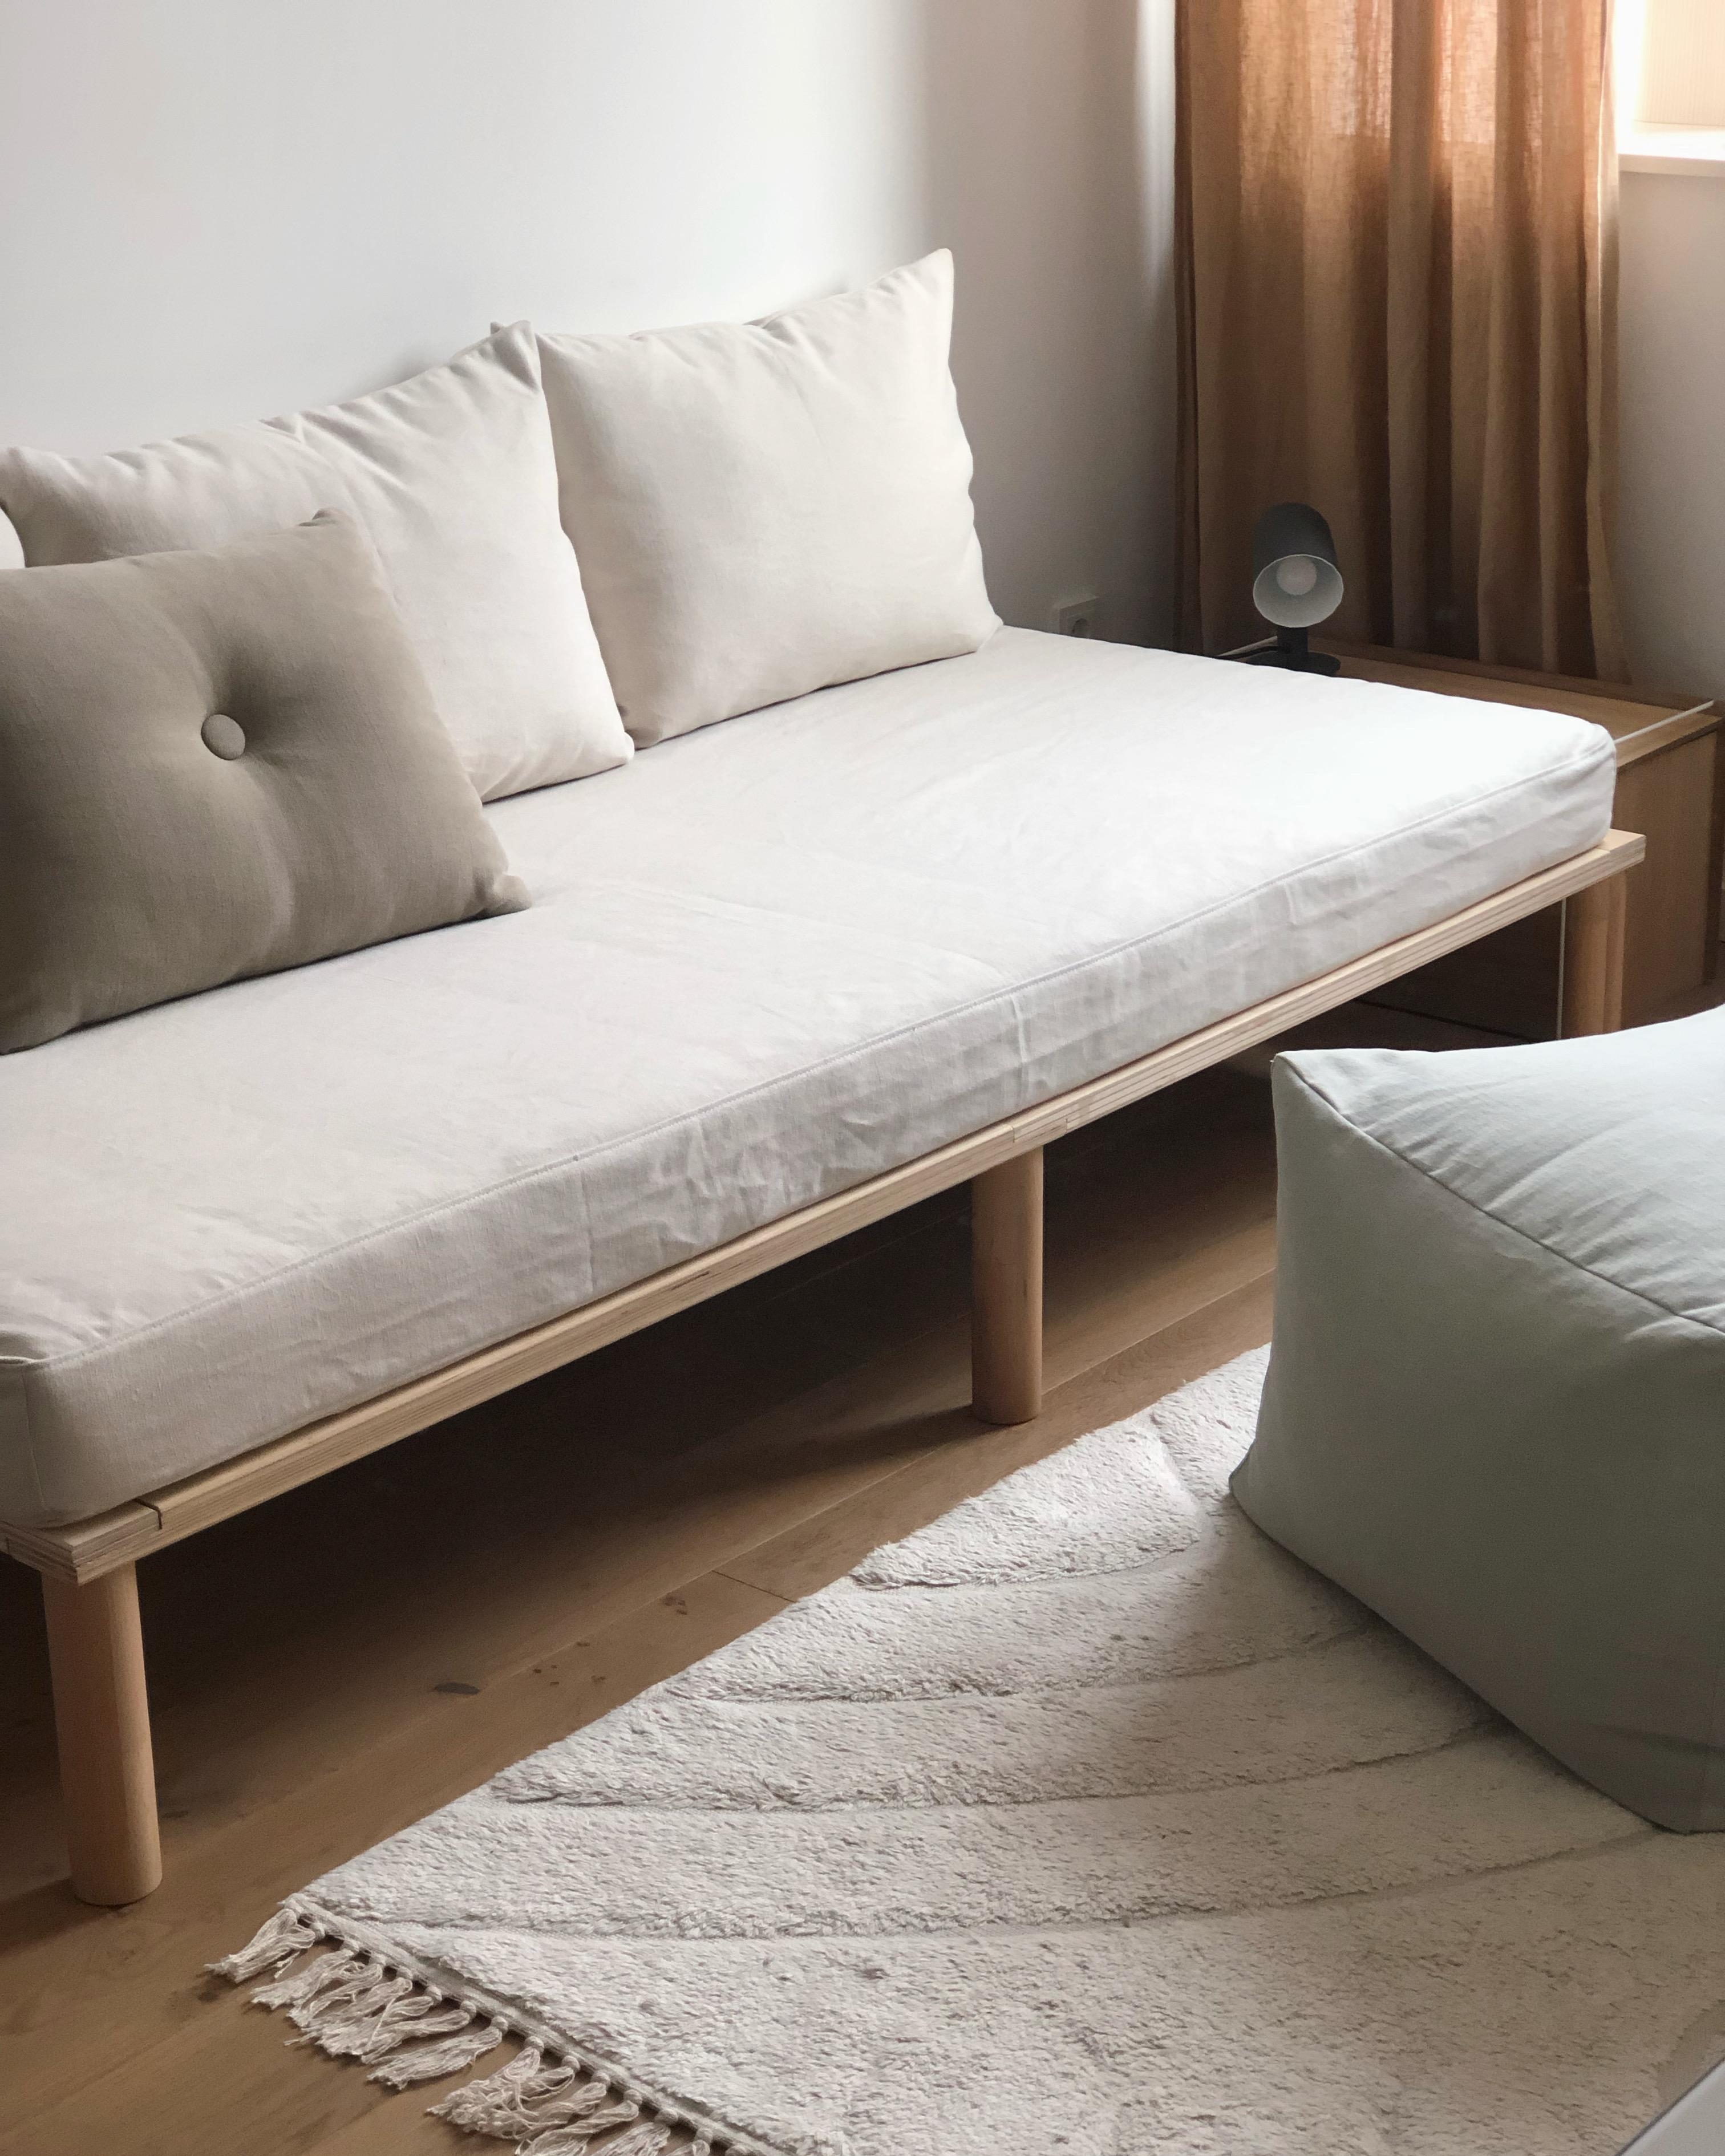 #gästezimmer #guestroom #daybed #bett #couch #japandi #skandinavisch #scandi #couchstyle #minimalism #interior